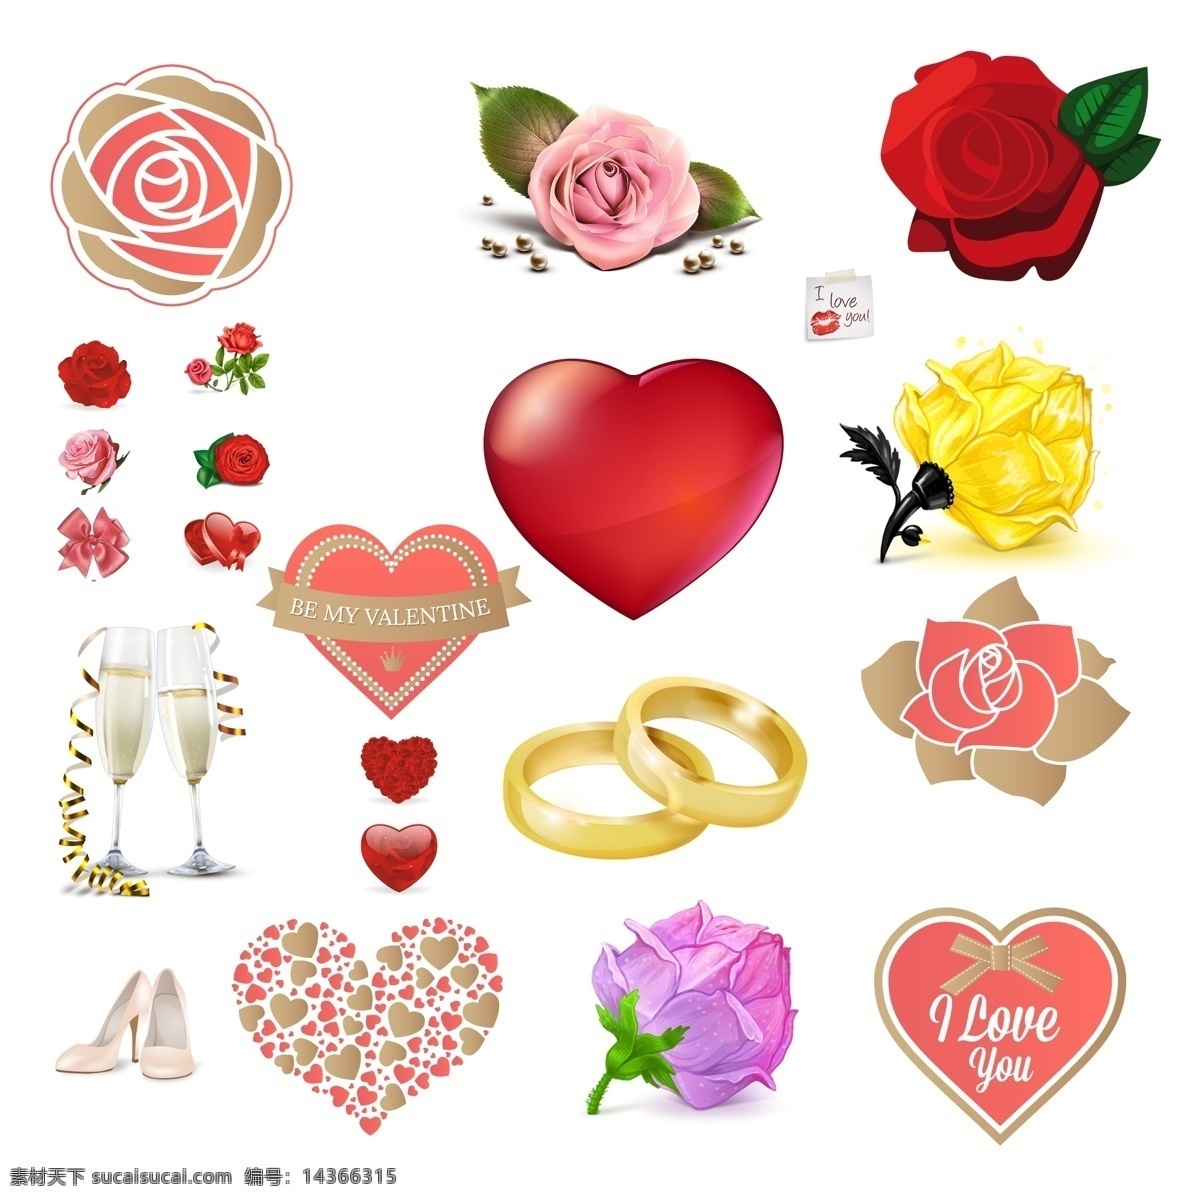 透明 爱心 玫瑰 合集 爱情 婚礼 家居装饰素材